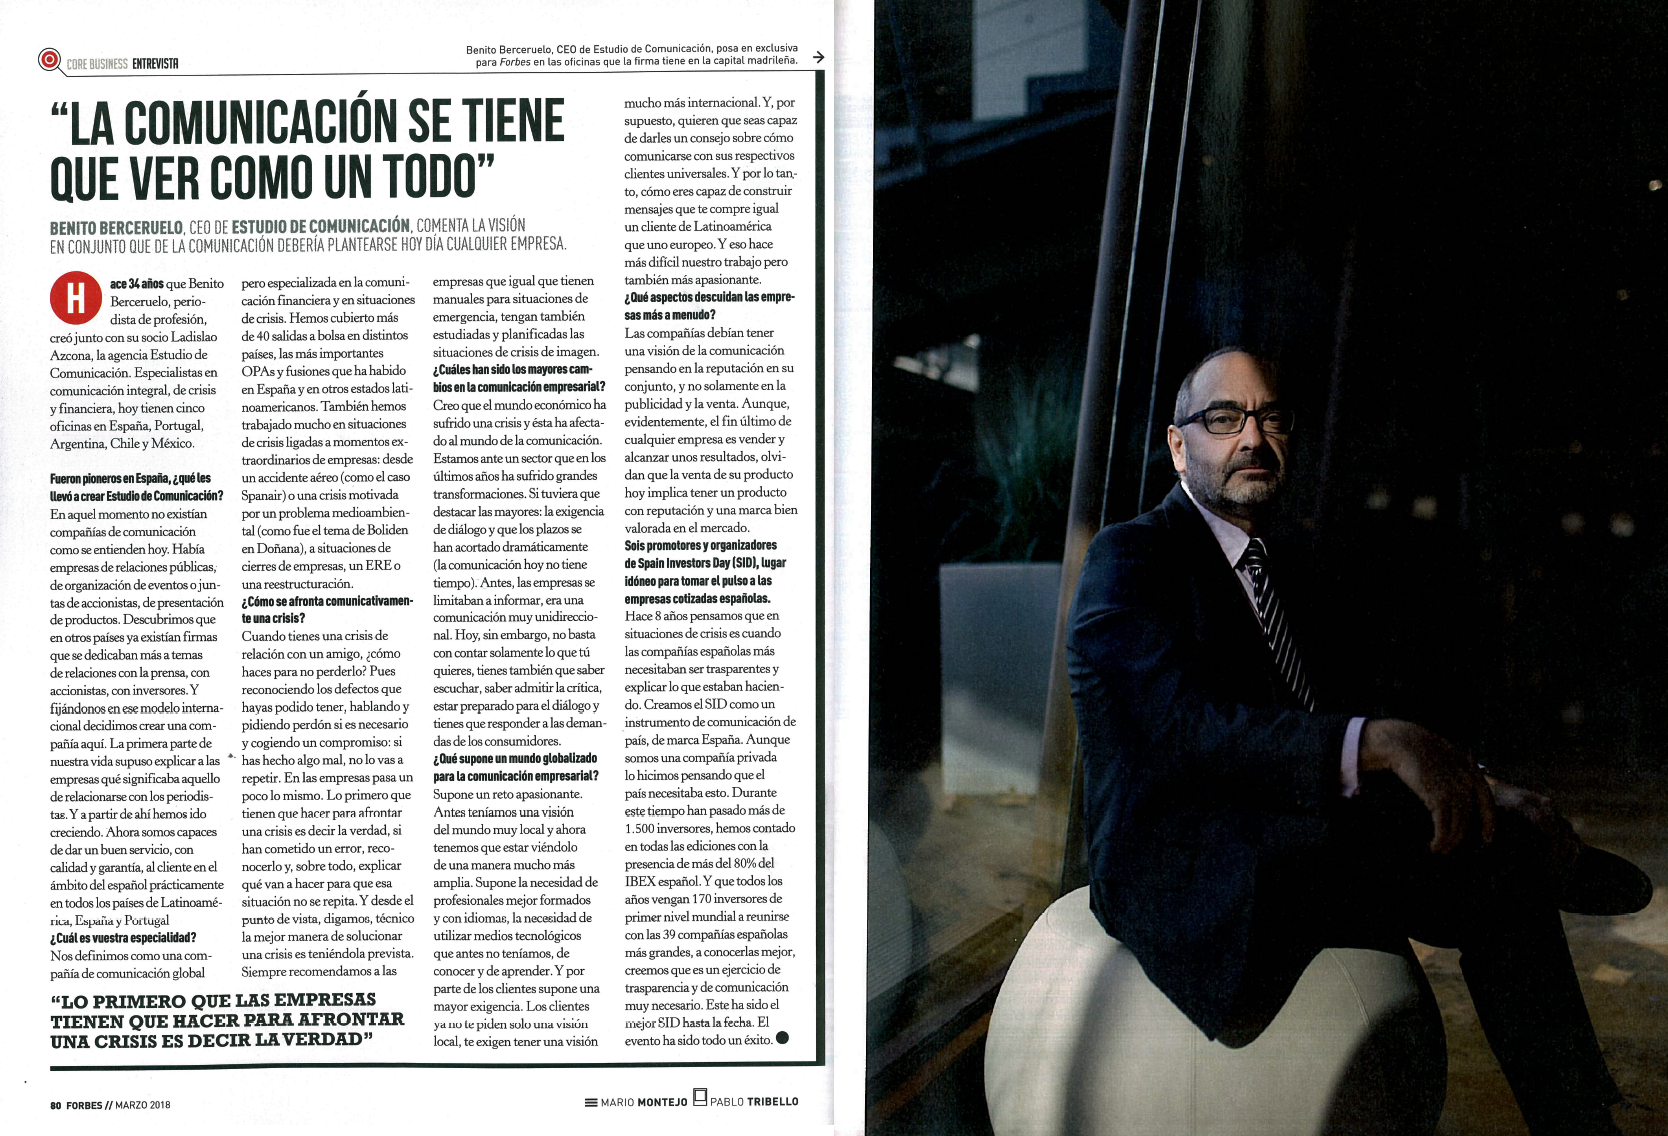 Estudio de Comunicación - Entrevista a Benito Berceruelo en Forbes